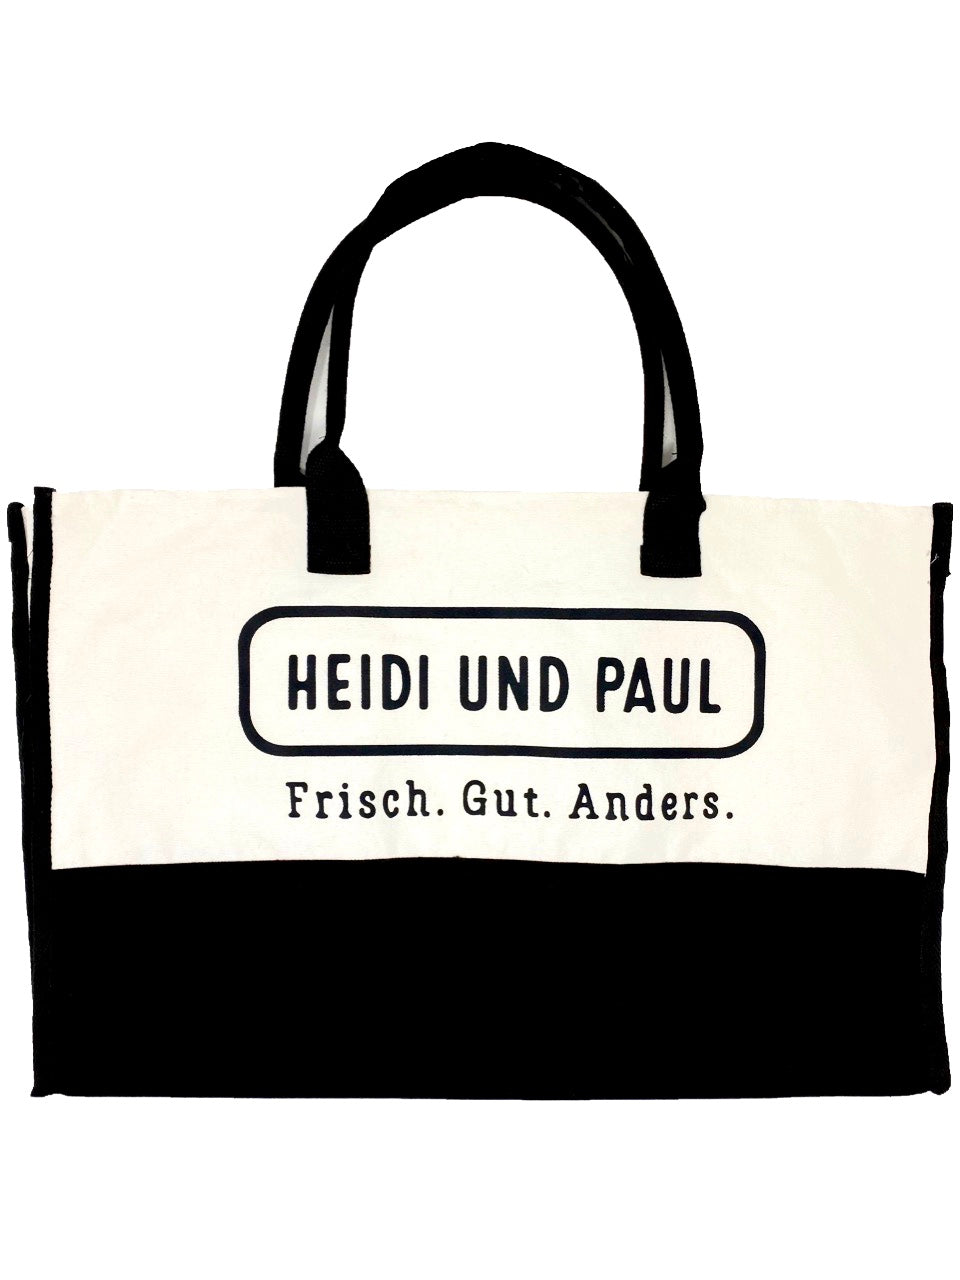 Heidi and Paul beach bag and shopper, environmentally friendly